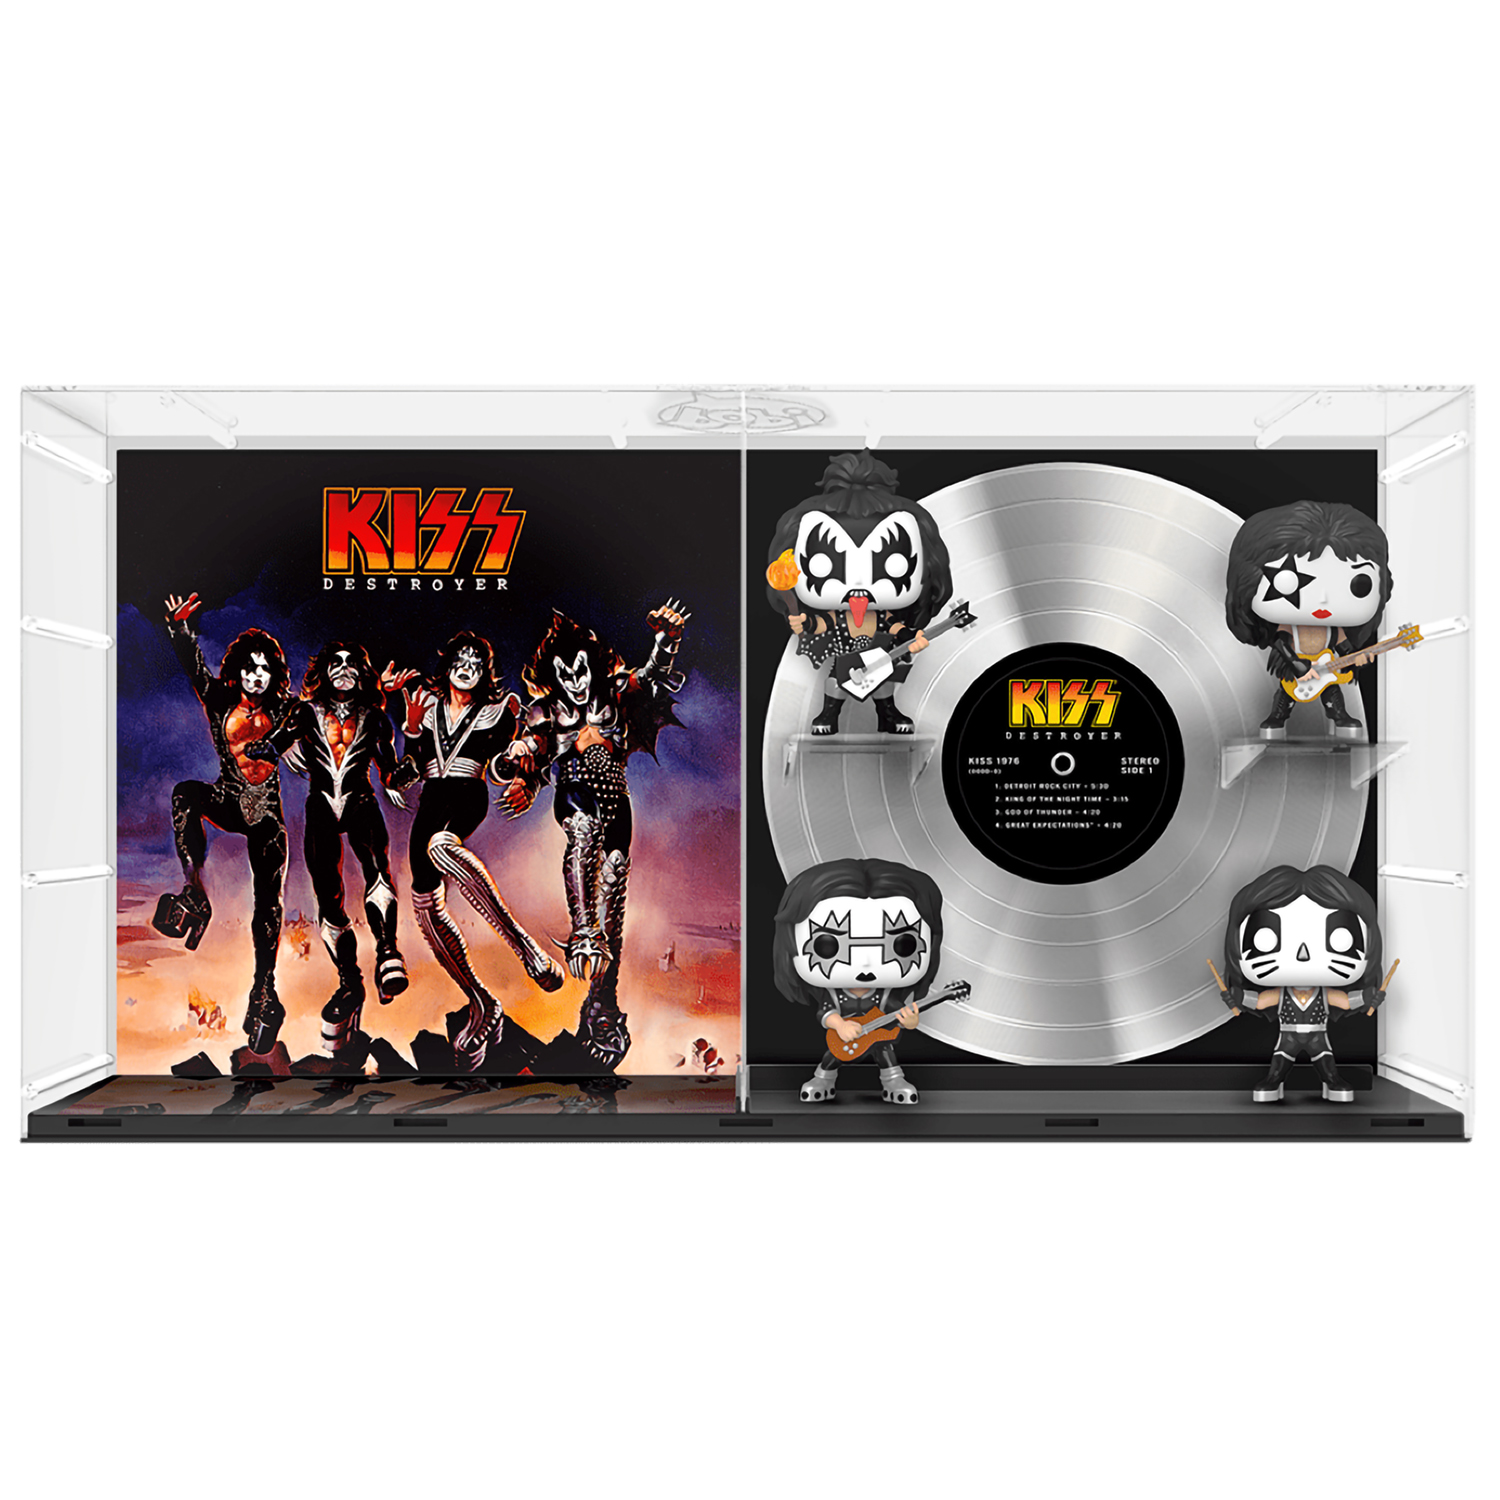 Фигурка Funko POP! Albums Deluxe Kiss Destroyer GW Exc 60995 - фото 1